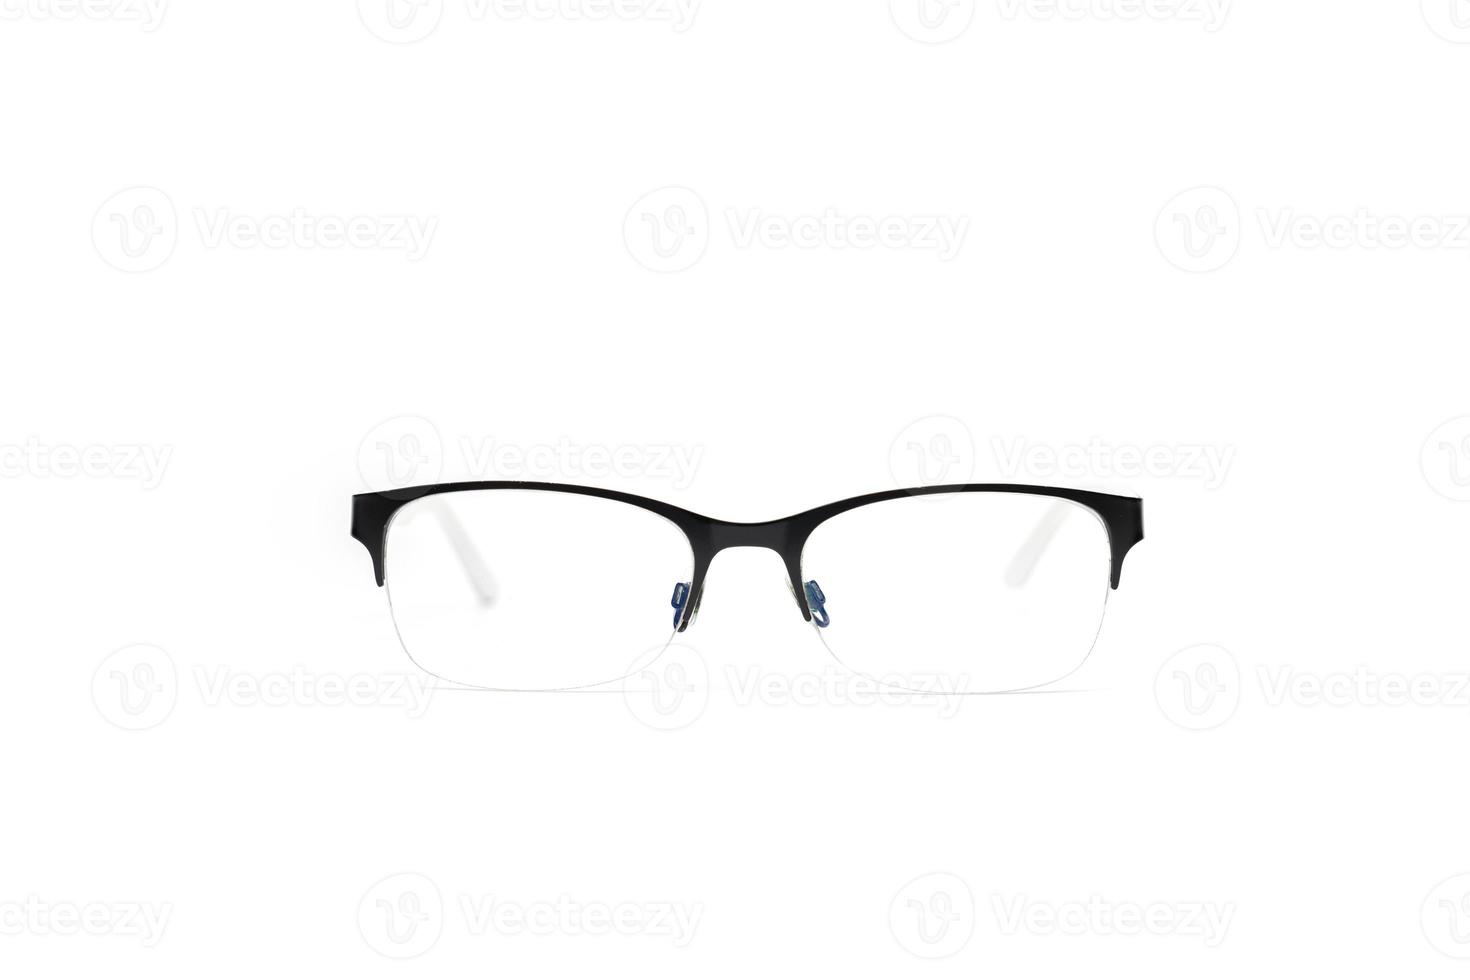 anteojos simples con marco negro audaz en la parte superior de la lente. está aislado del fondo y se coloca sobre el fondo blanco a la luz del estudio. foto